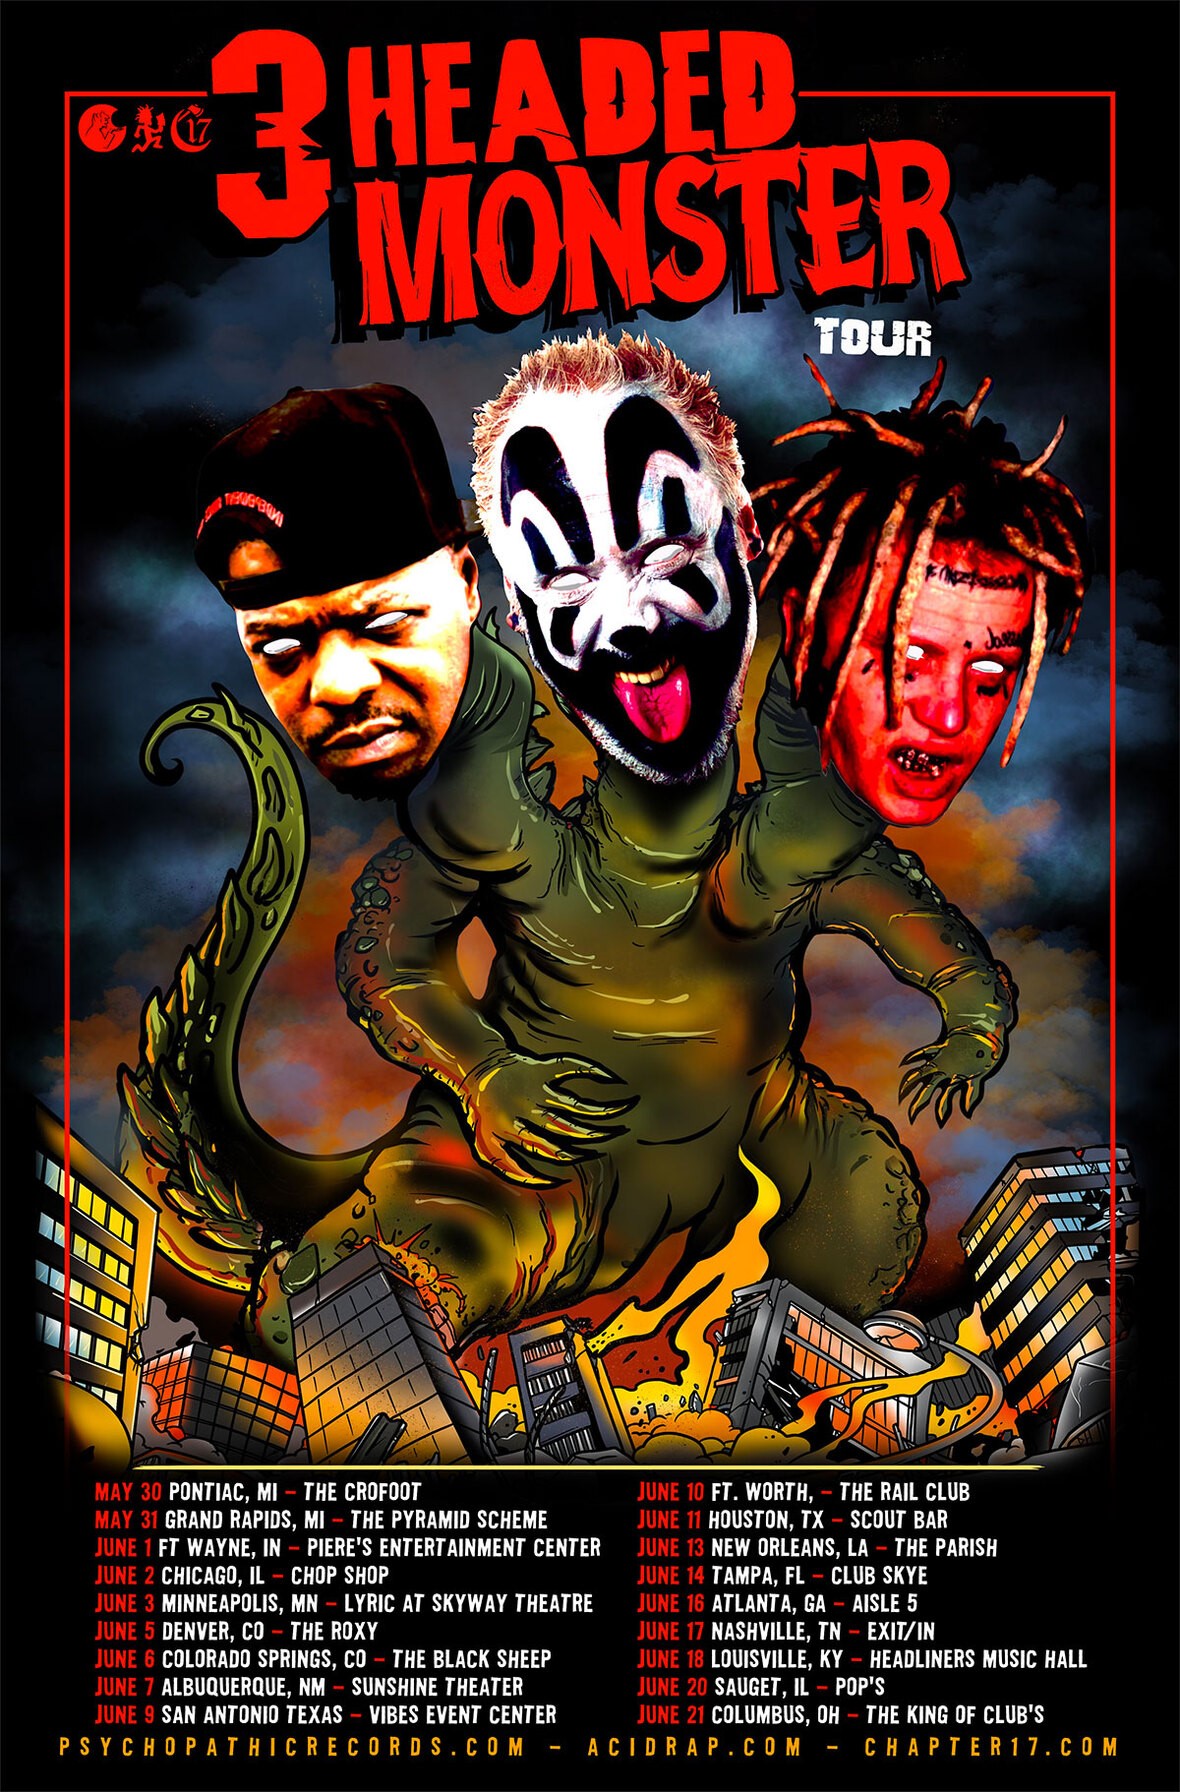 3 headed monster tour winnipeg